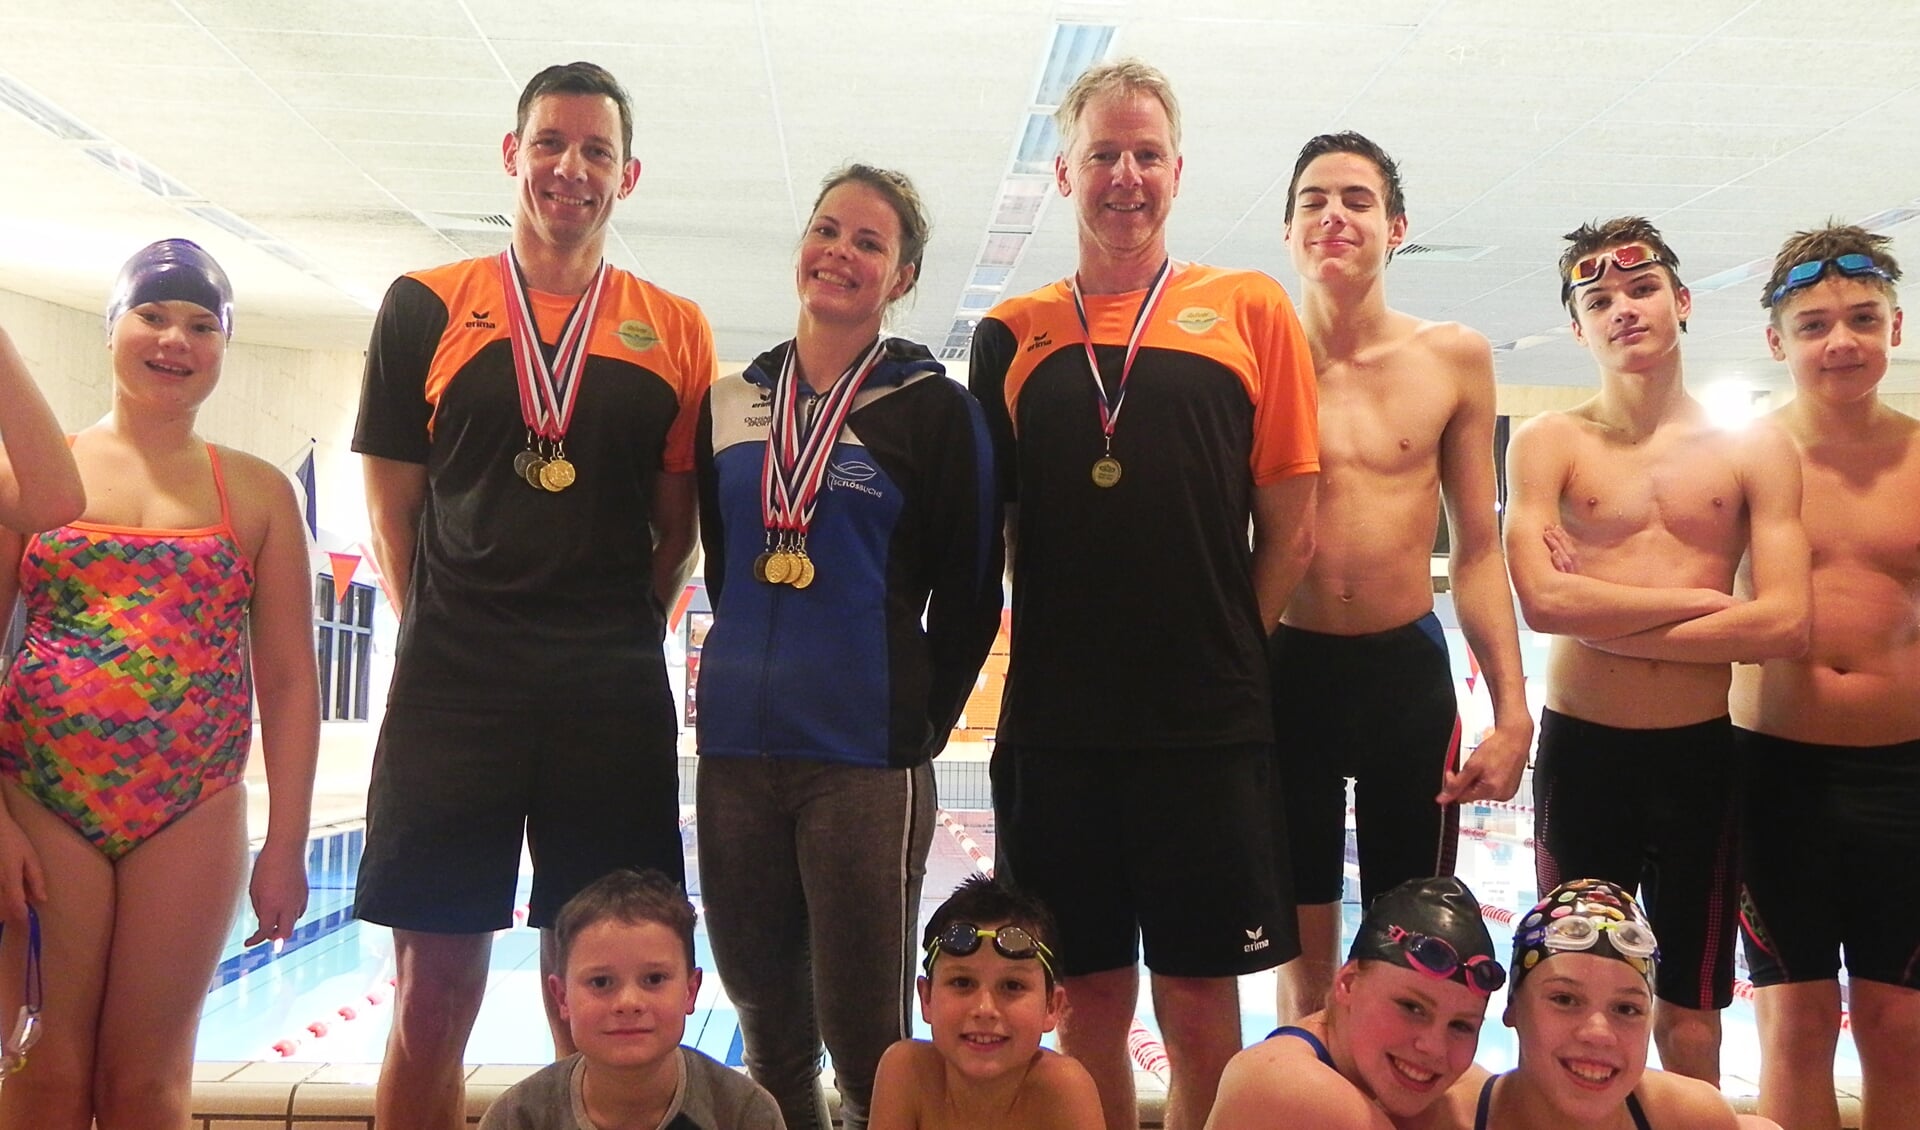 De medaillewinnaars van het ONMK, geflankeerd door jeugdige zwemtalenten.